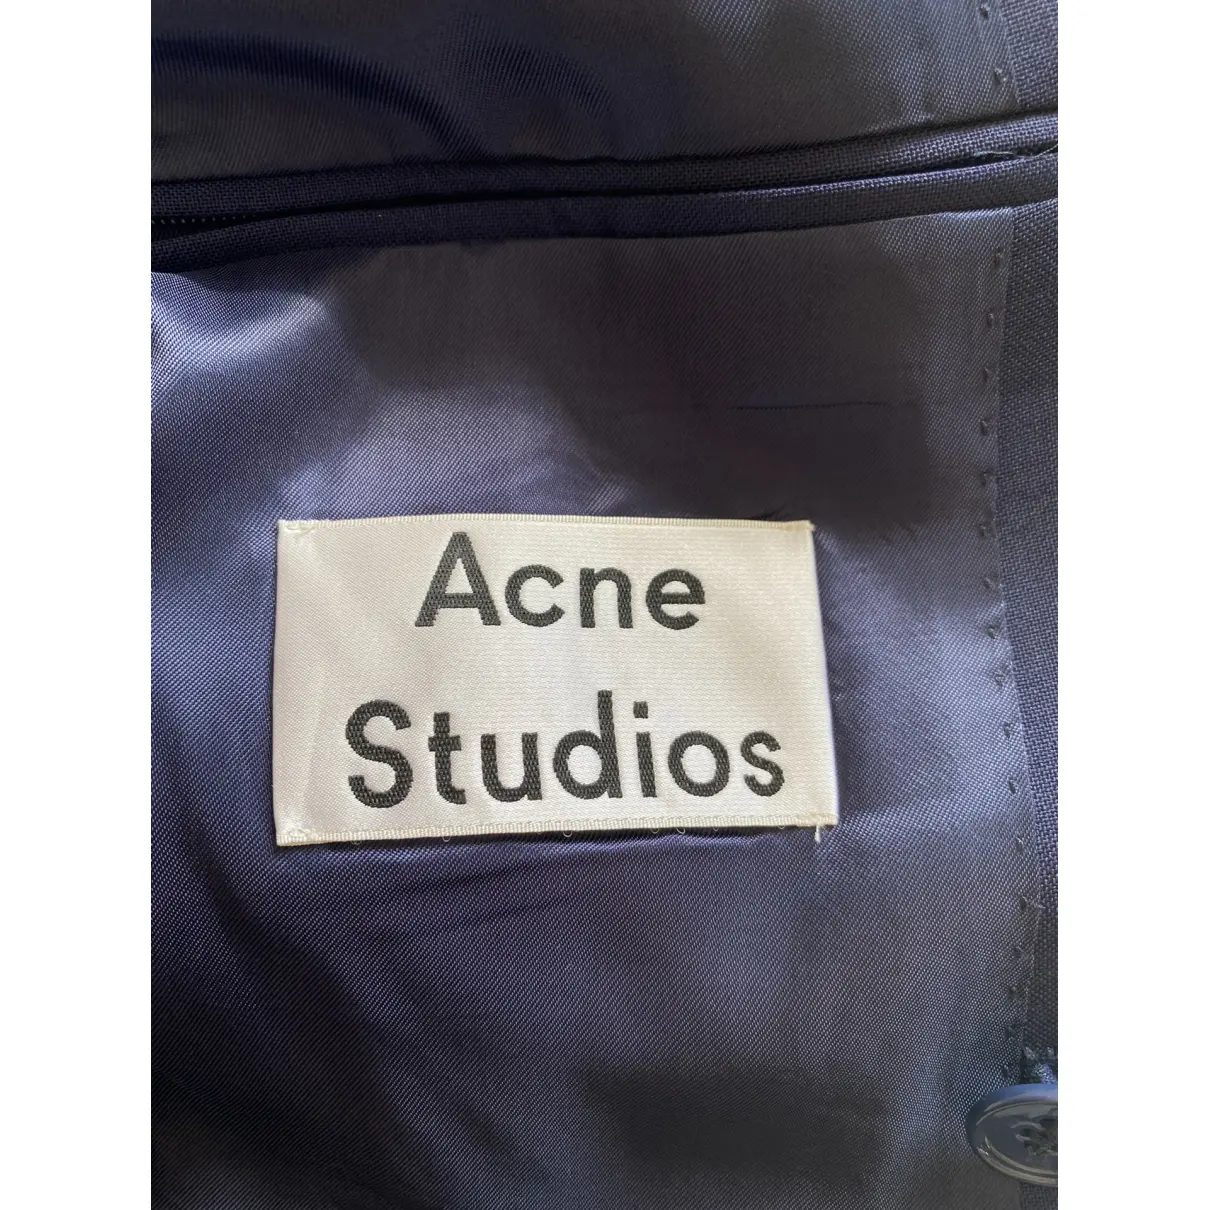 Buy Acne Studios Wool jacket online